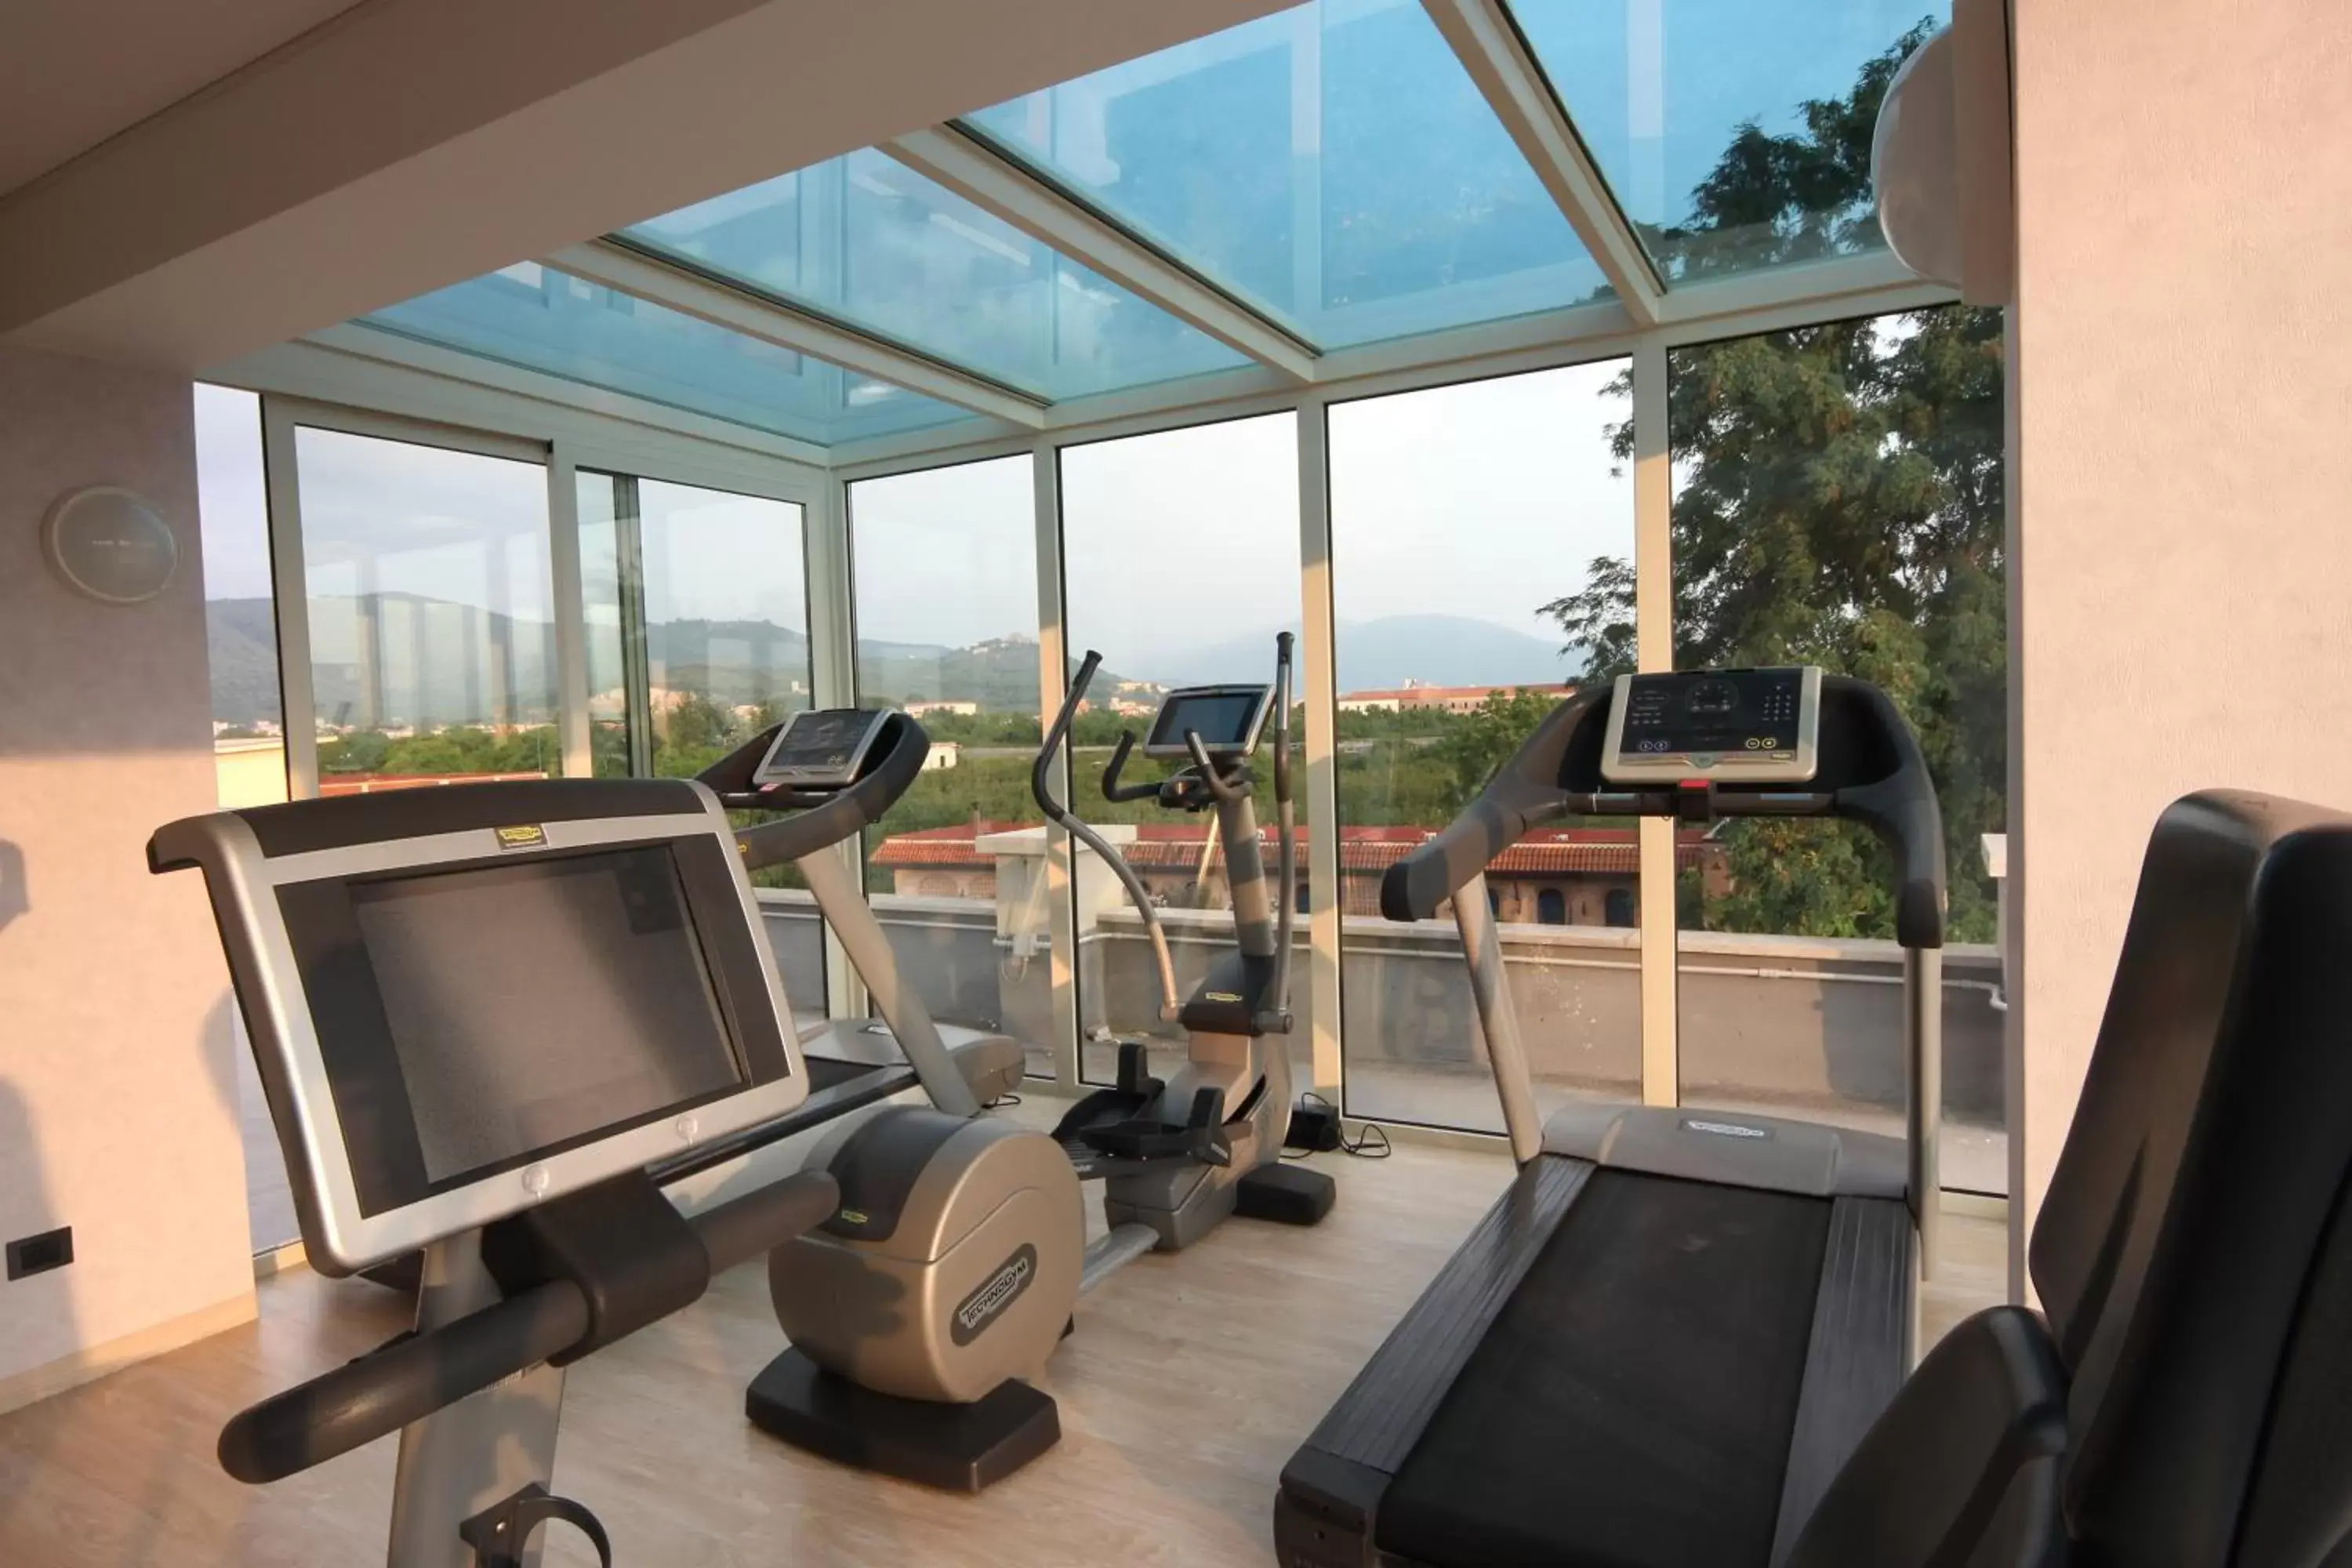 Fitness centre/facilities, Fitness Center/Facilities in Palazzo Giordano Bruno